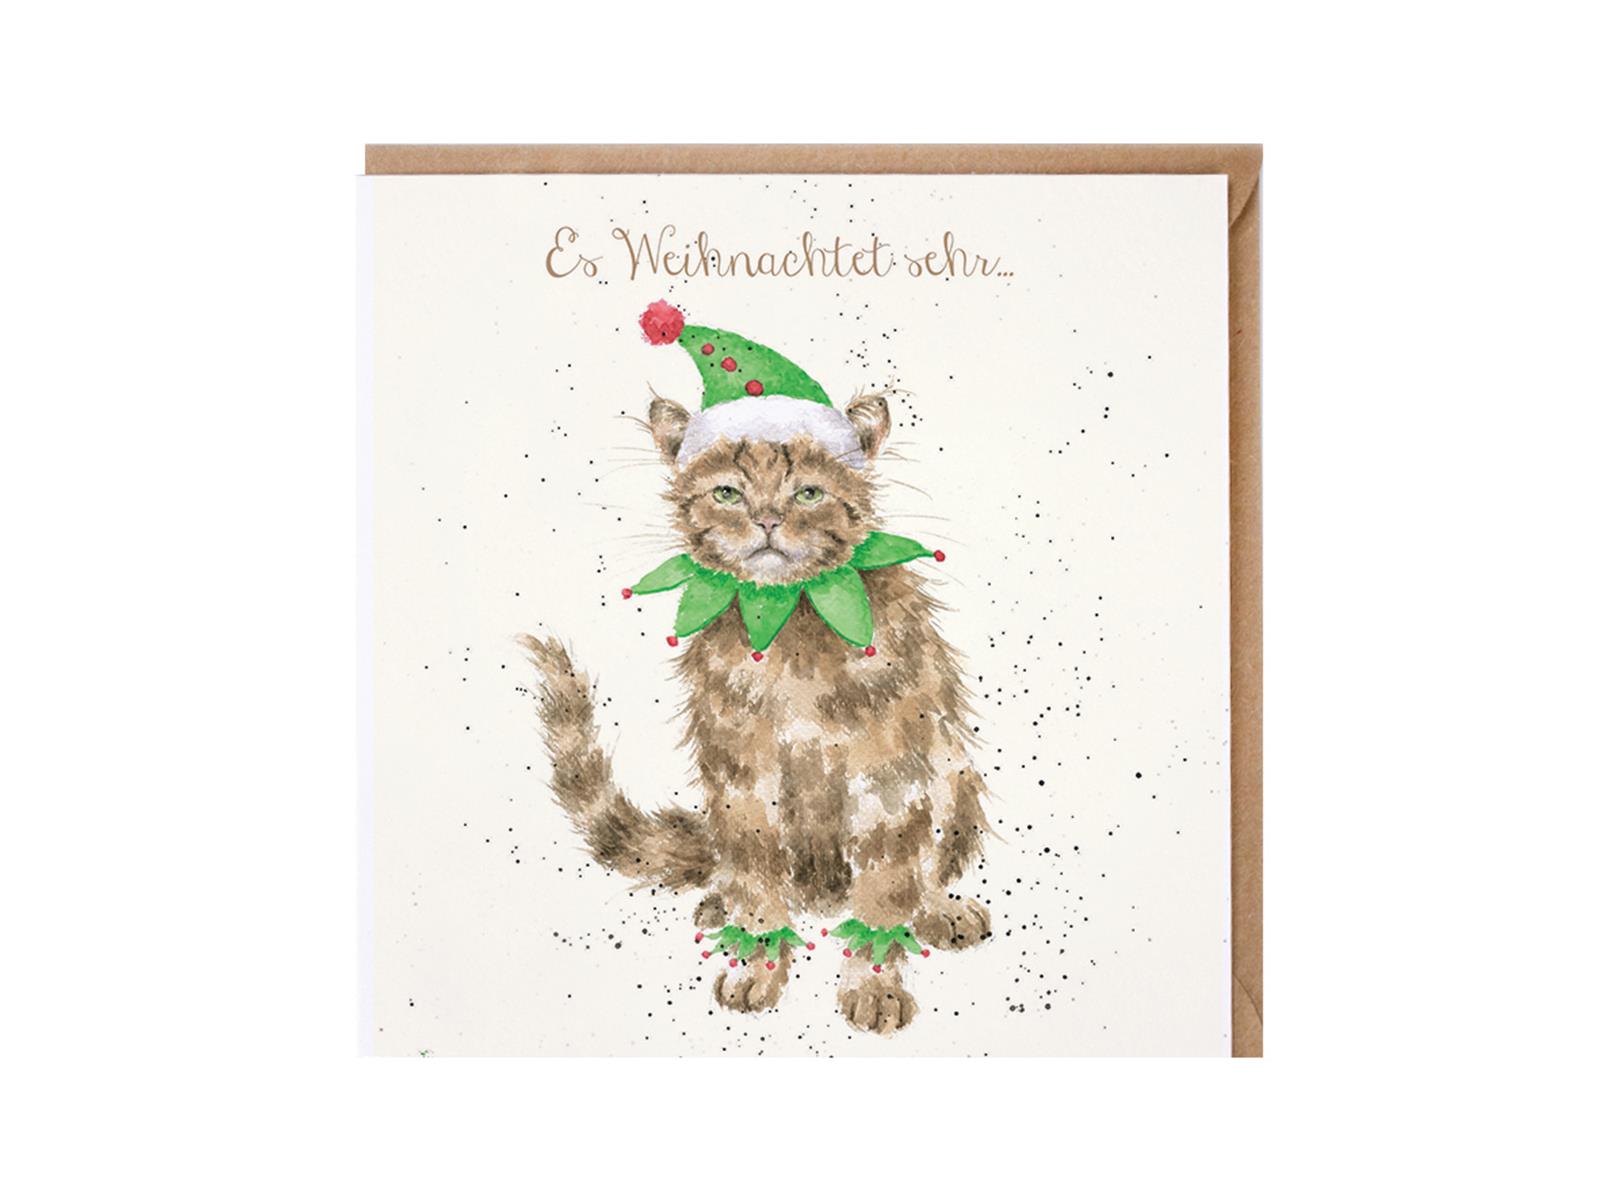 Wrendale Doppelkarte Weihnachten mit Umschlag, Es Weihnachtet sehr..., Motiv Katze im Elfkostüm,15x15 cm